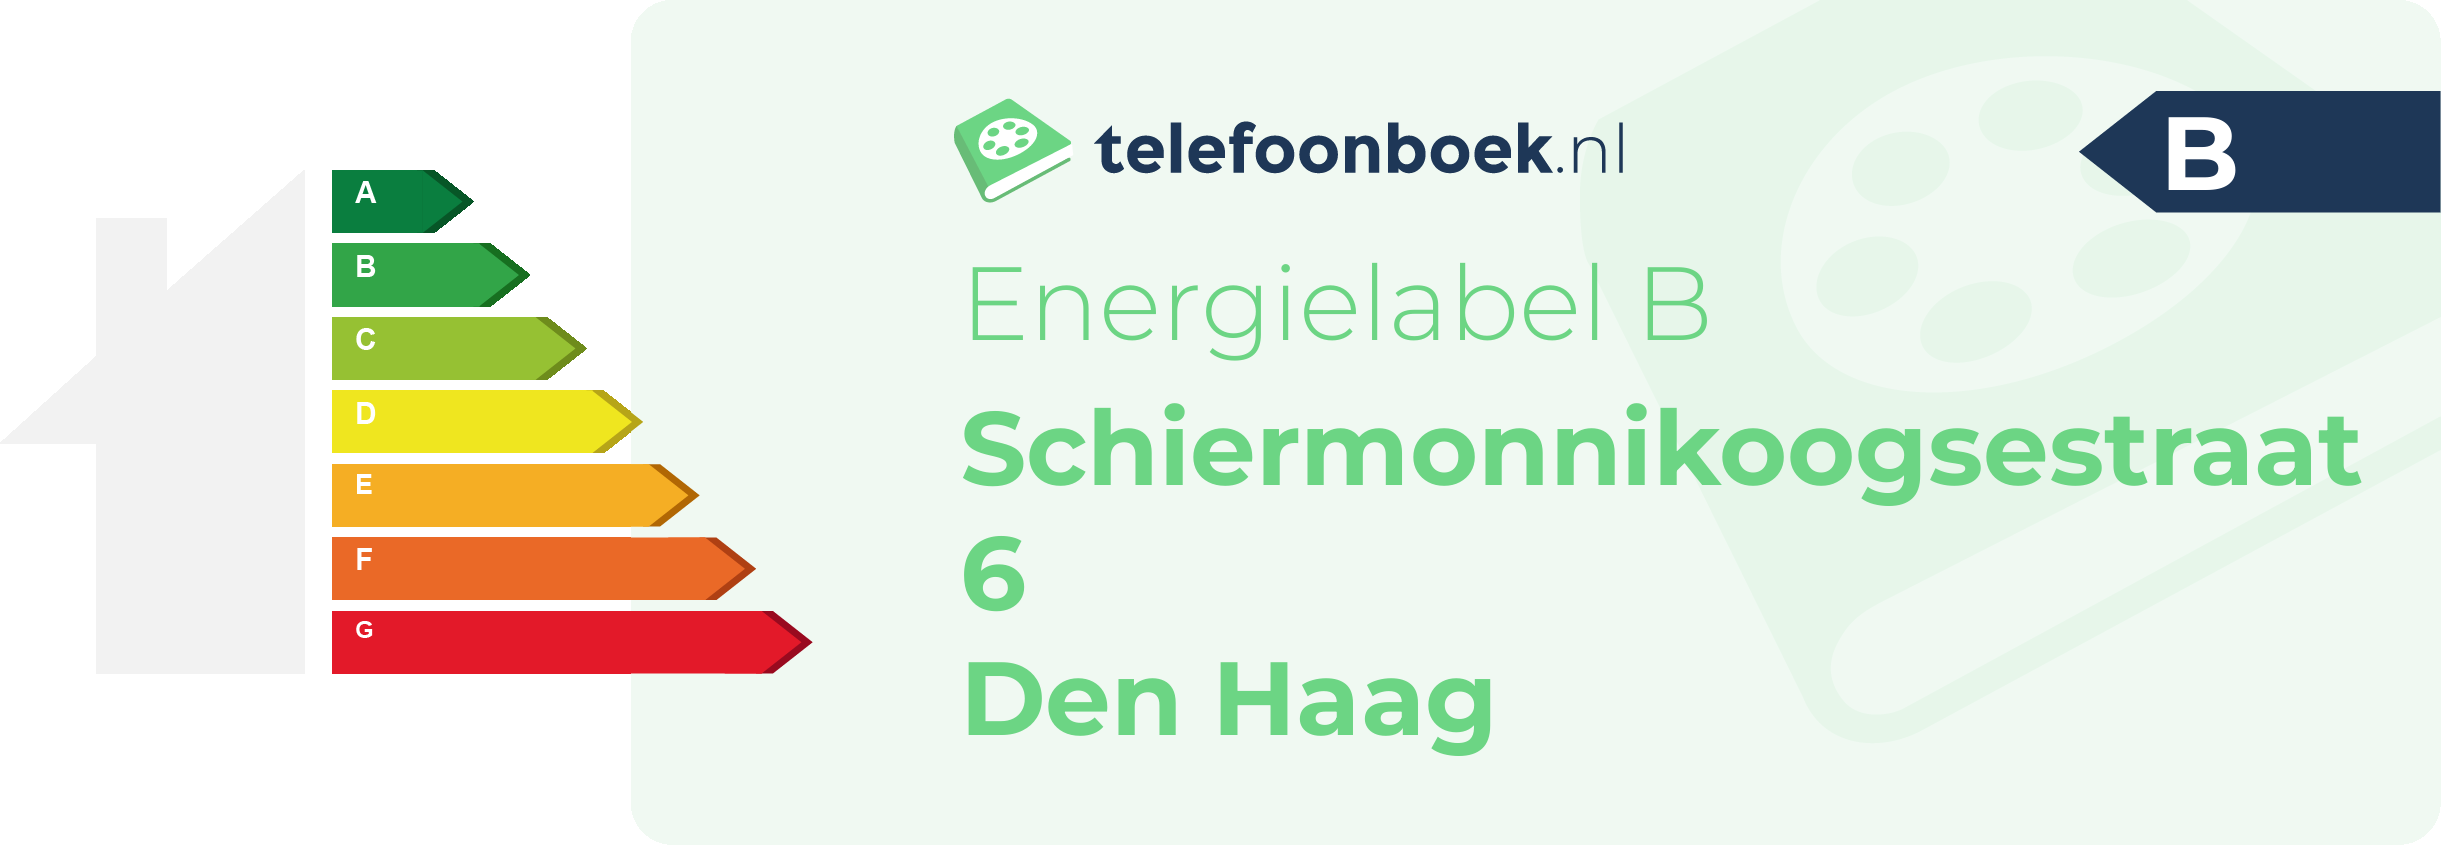 Energielabel Schiermonnikoogsestraat 6 Den Haag